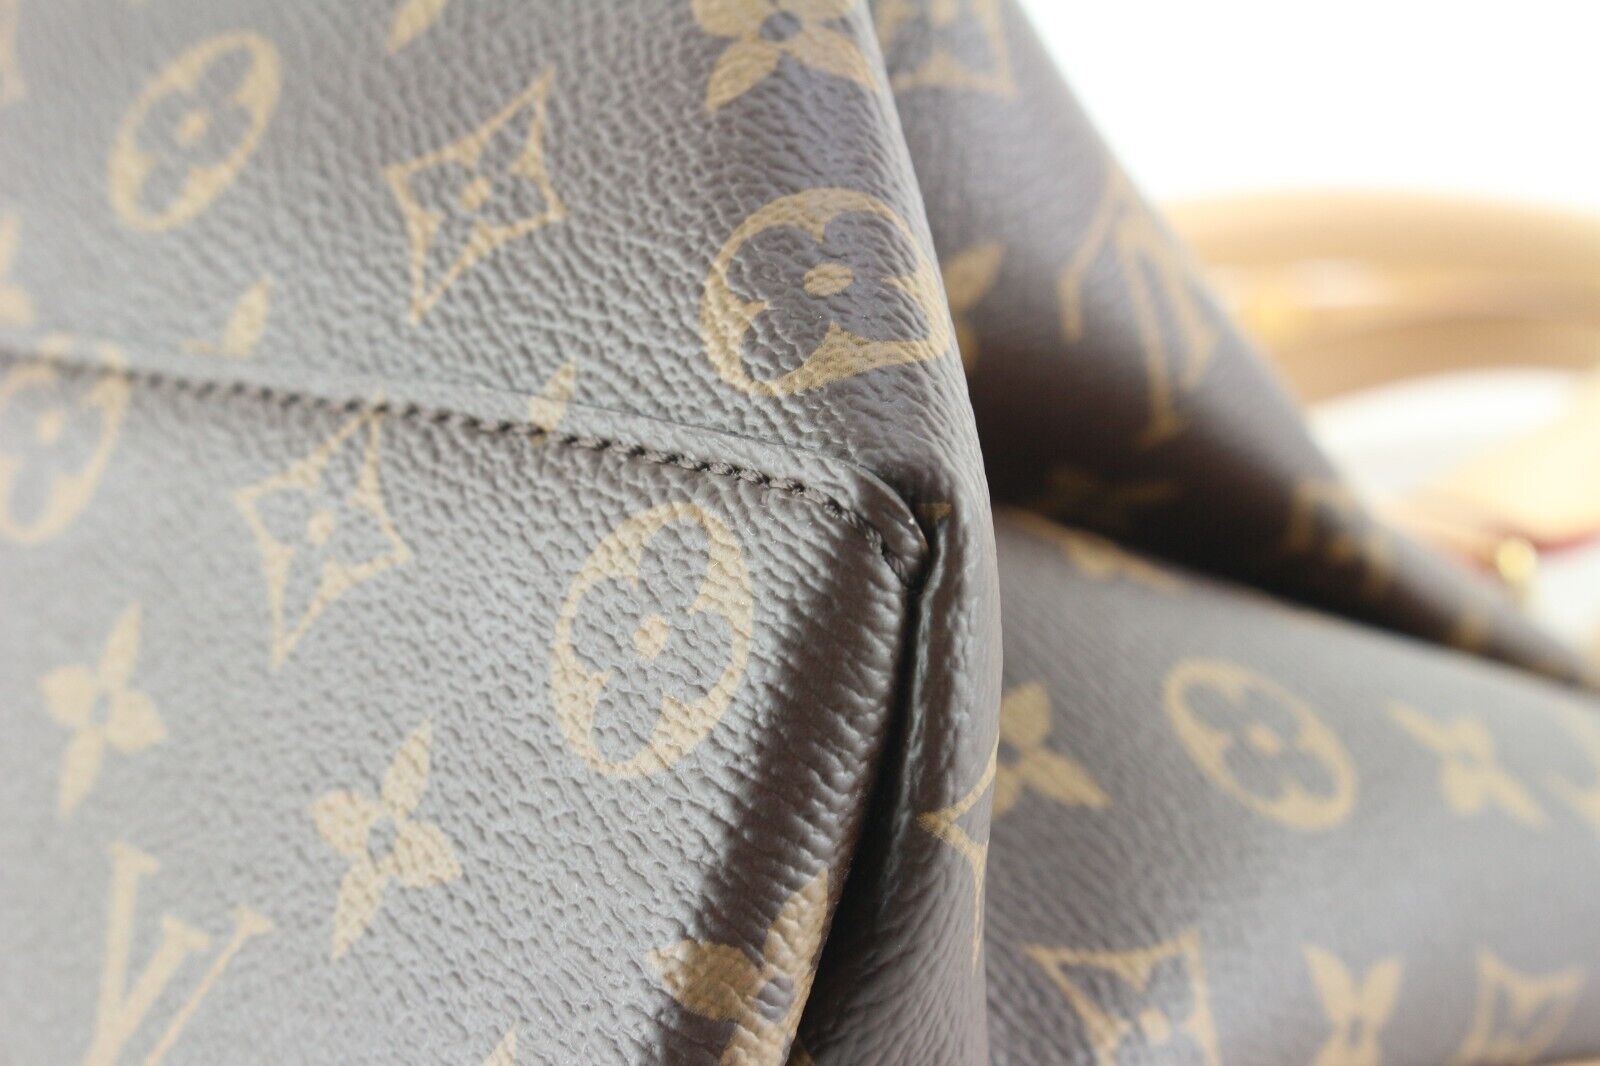 LOUIS VUITTON Louis Vuitton Rivoli Monogram Handbag